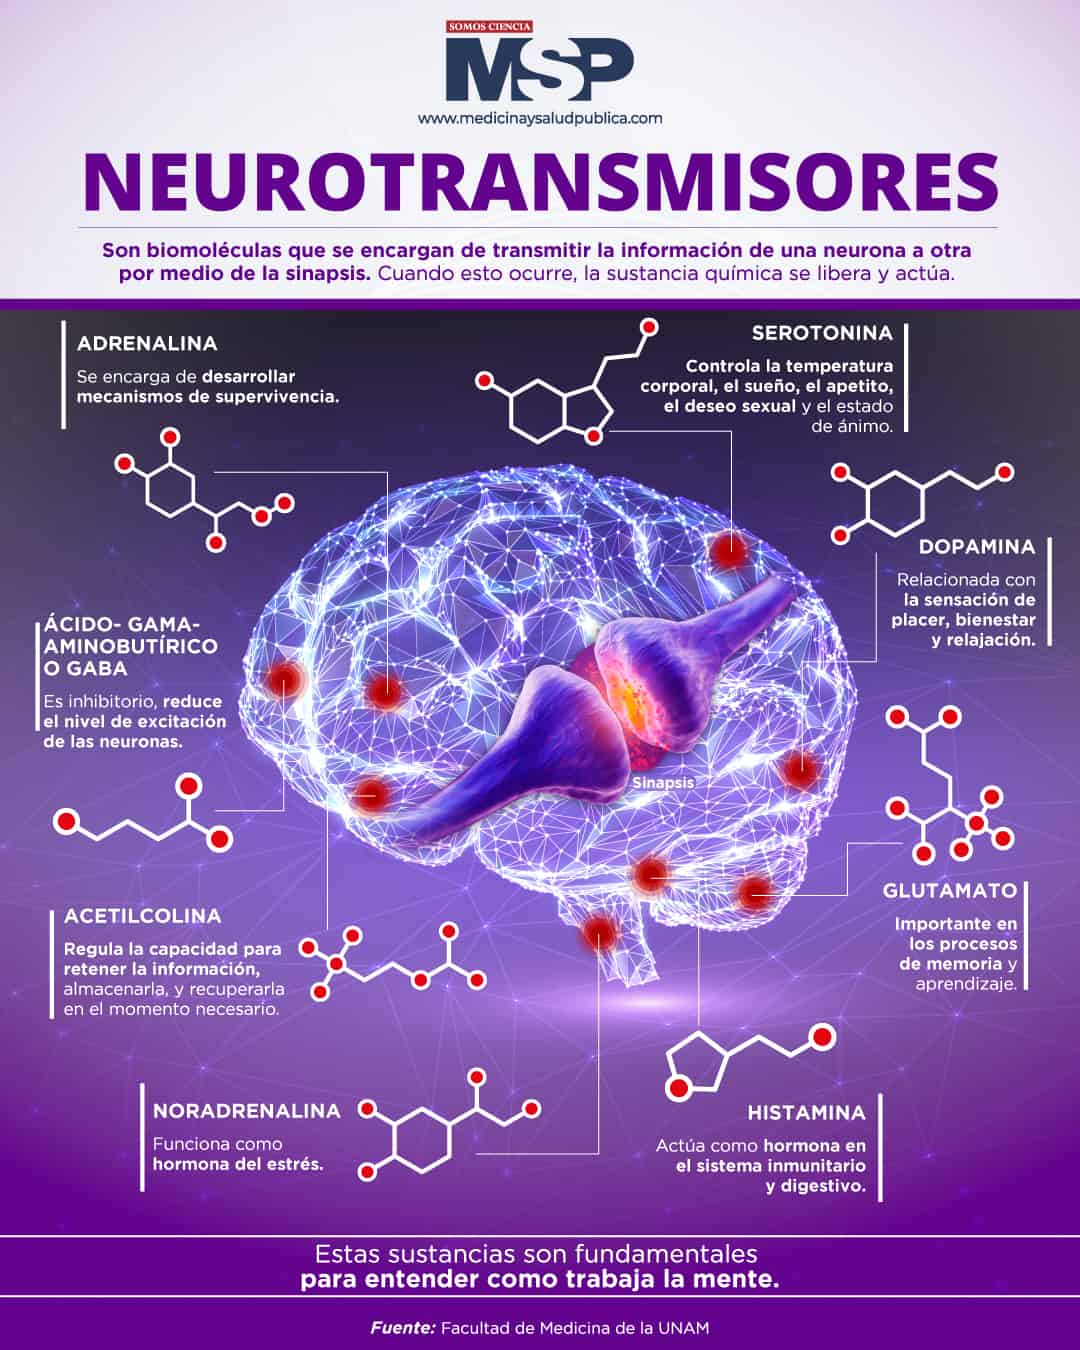 Neurotransmisores en el cerebro